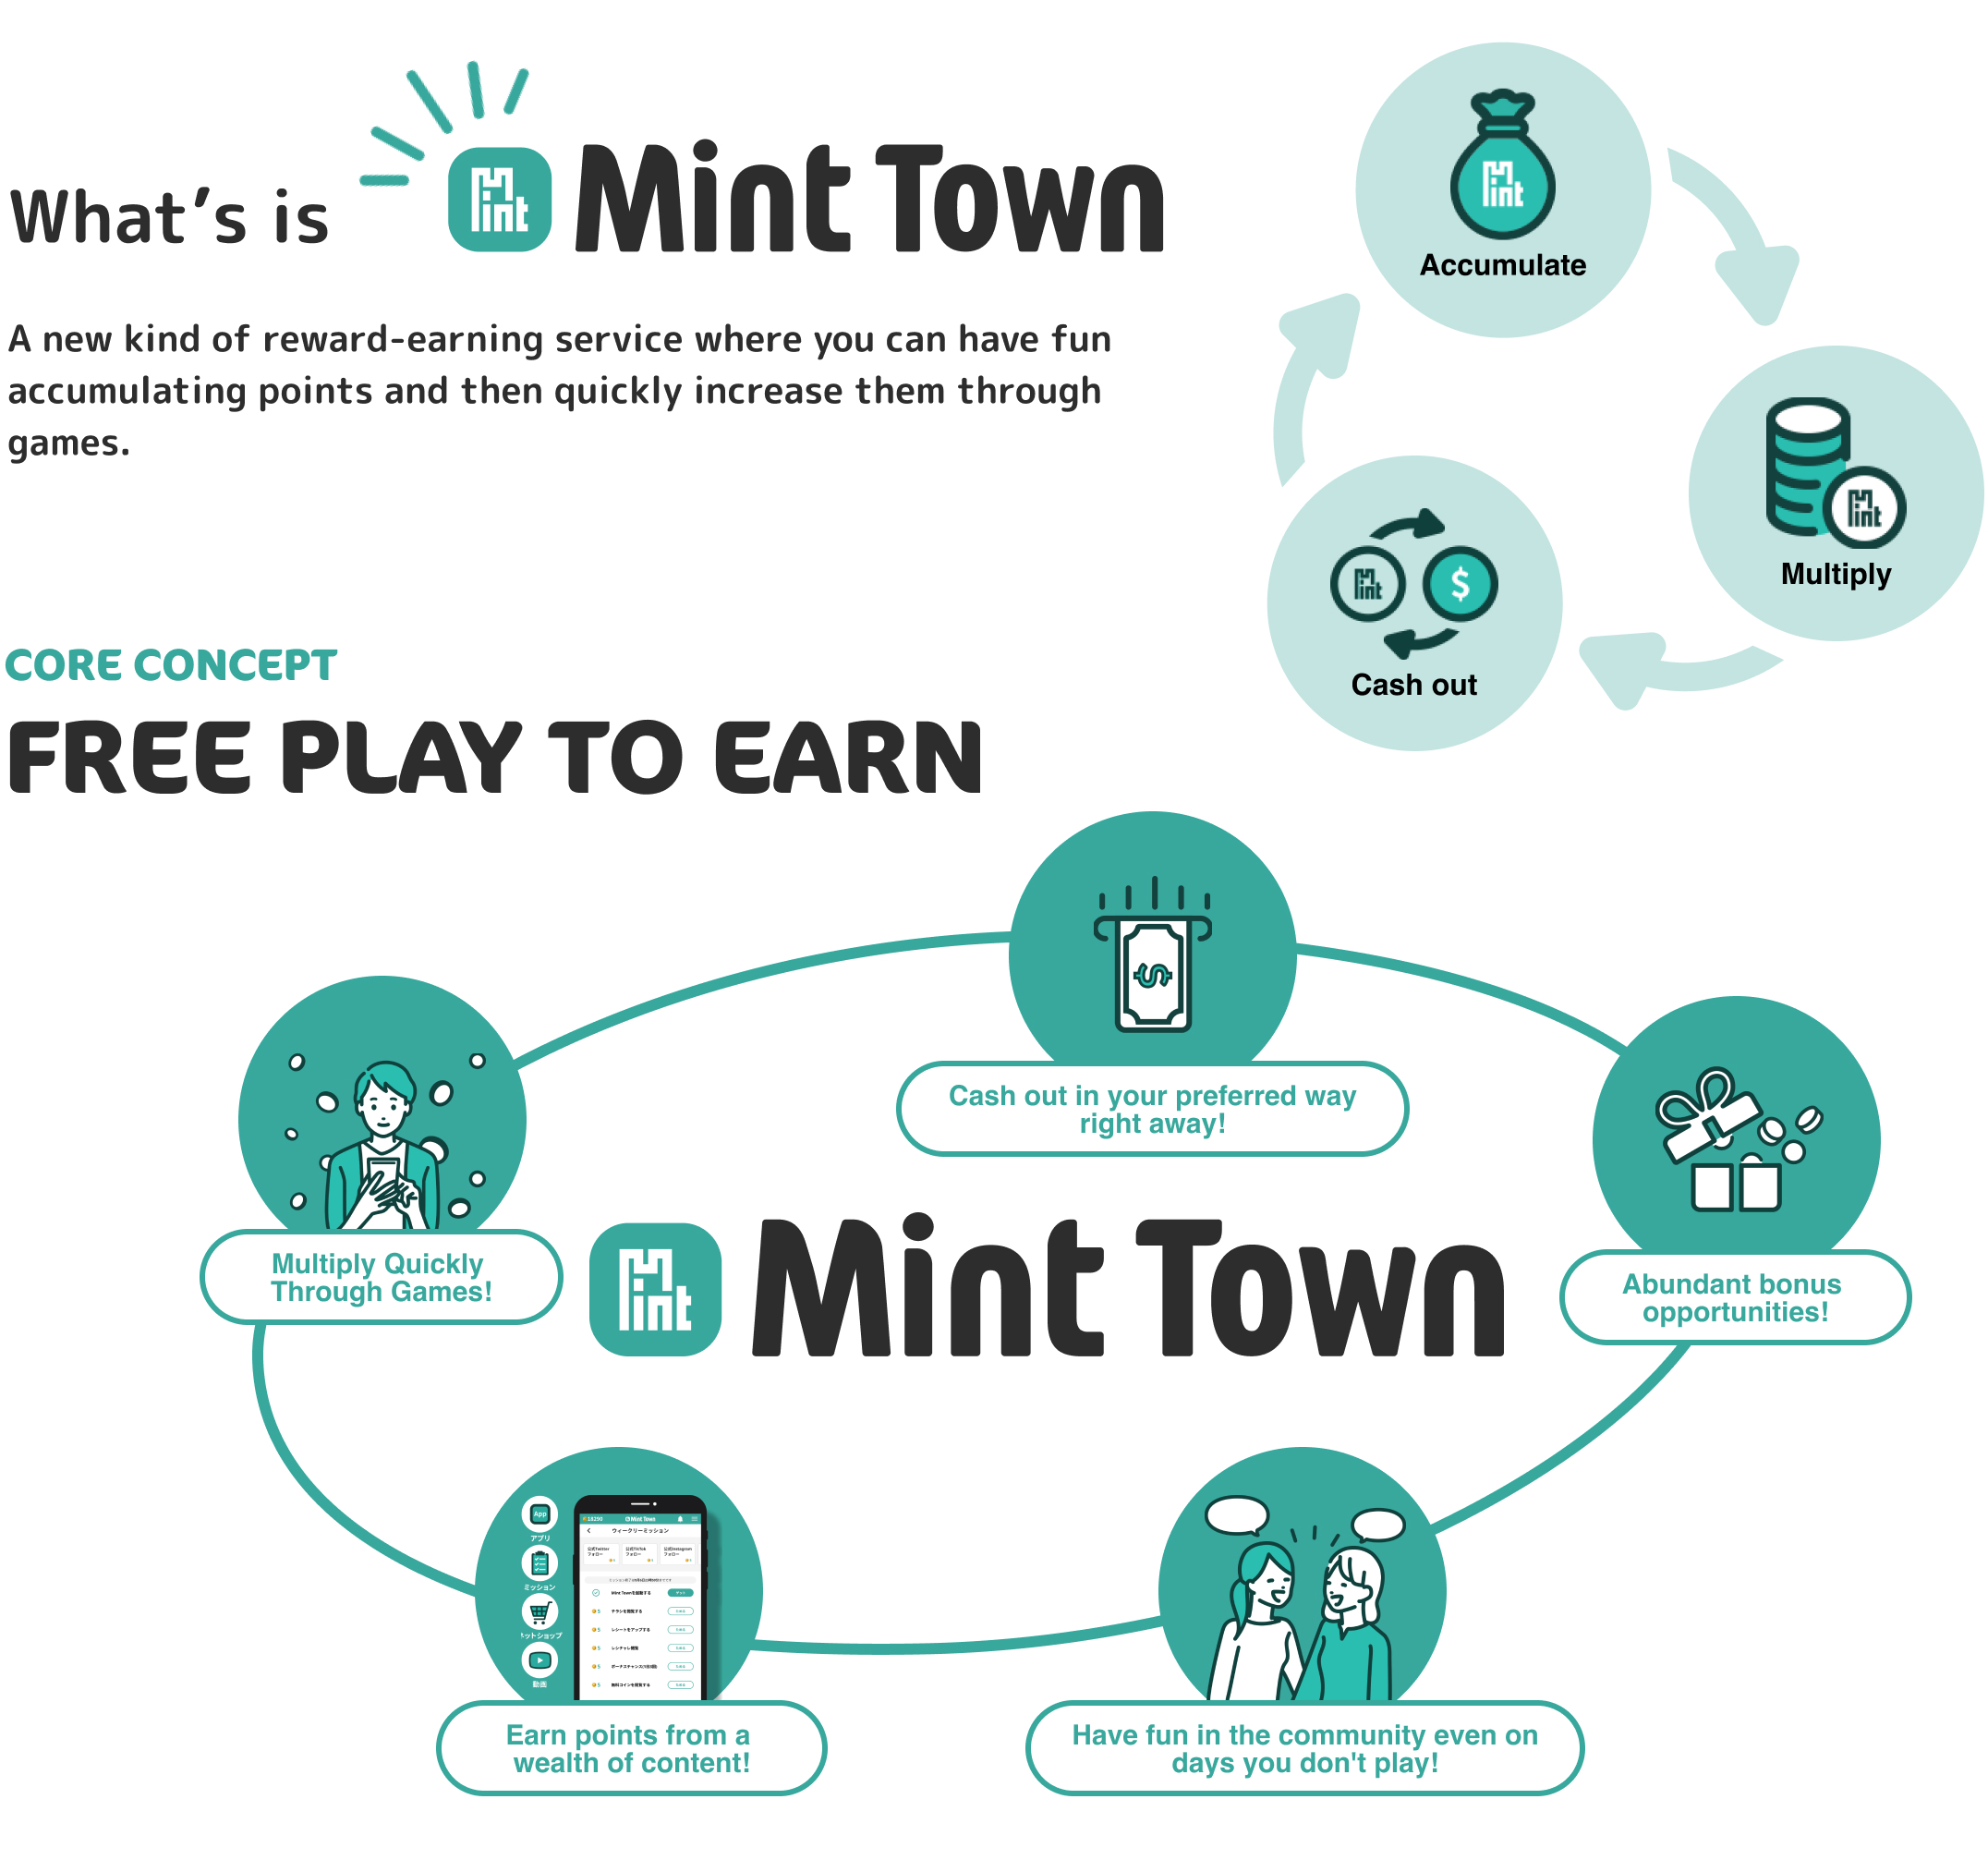 MintTownとは、楽しくポイントを溜めながらゲームで一気にポイントを増やすことができる新感覚のポイ活サービス。WEB3時代の総合エンターテイメントプラットフォームを目指してます。コアコンセプトは「FREE PLAY TO EARN - 無料でゲームをプレイして金銭を獲得する」